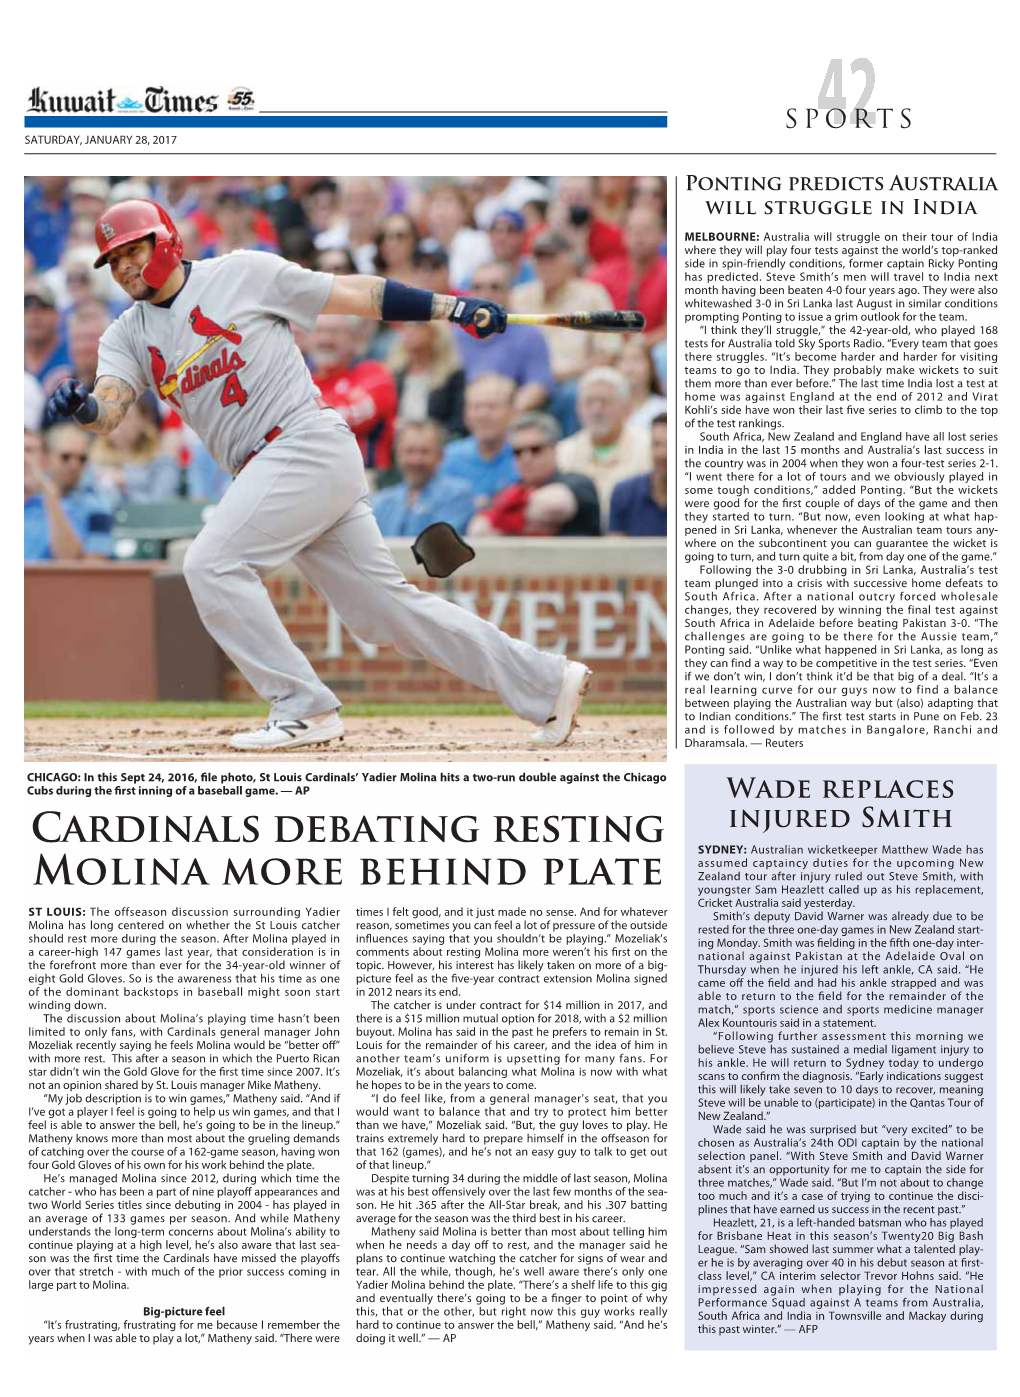 Cardinals Debating Resting Molina More Behind Plate